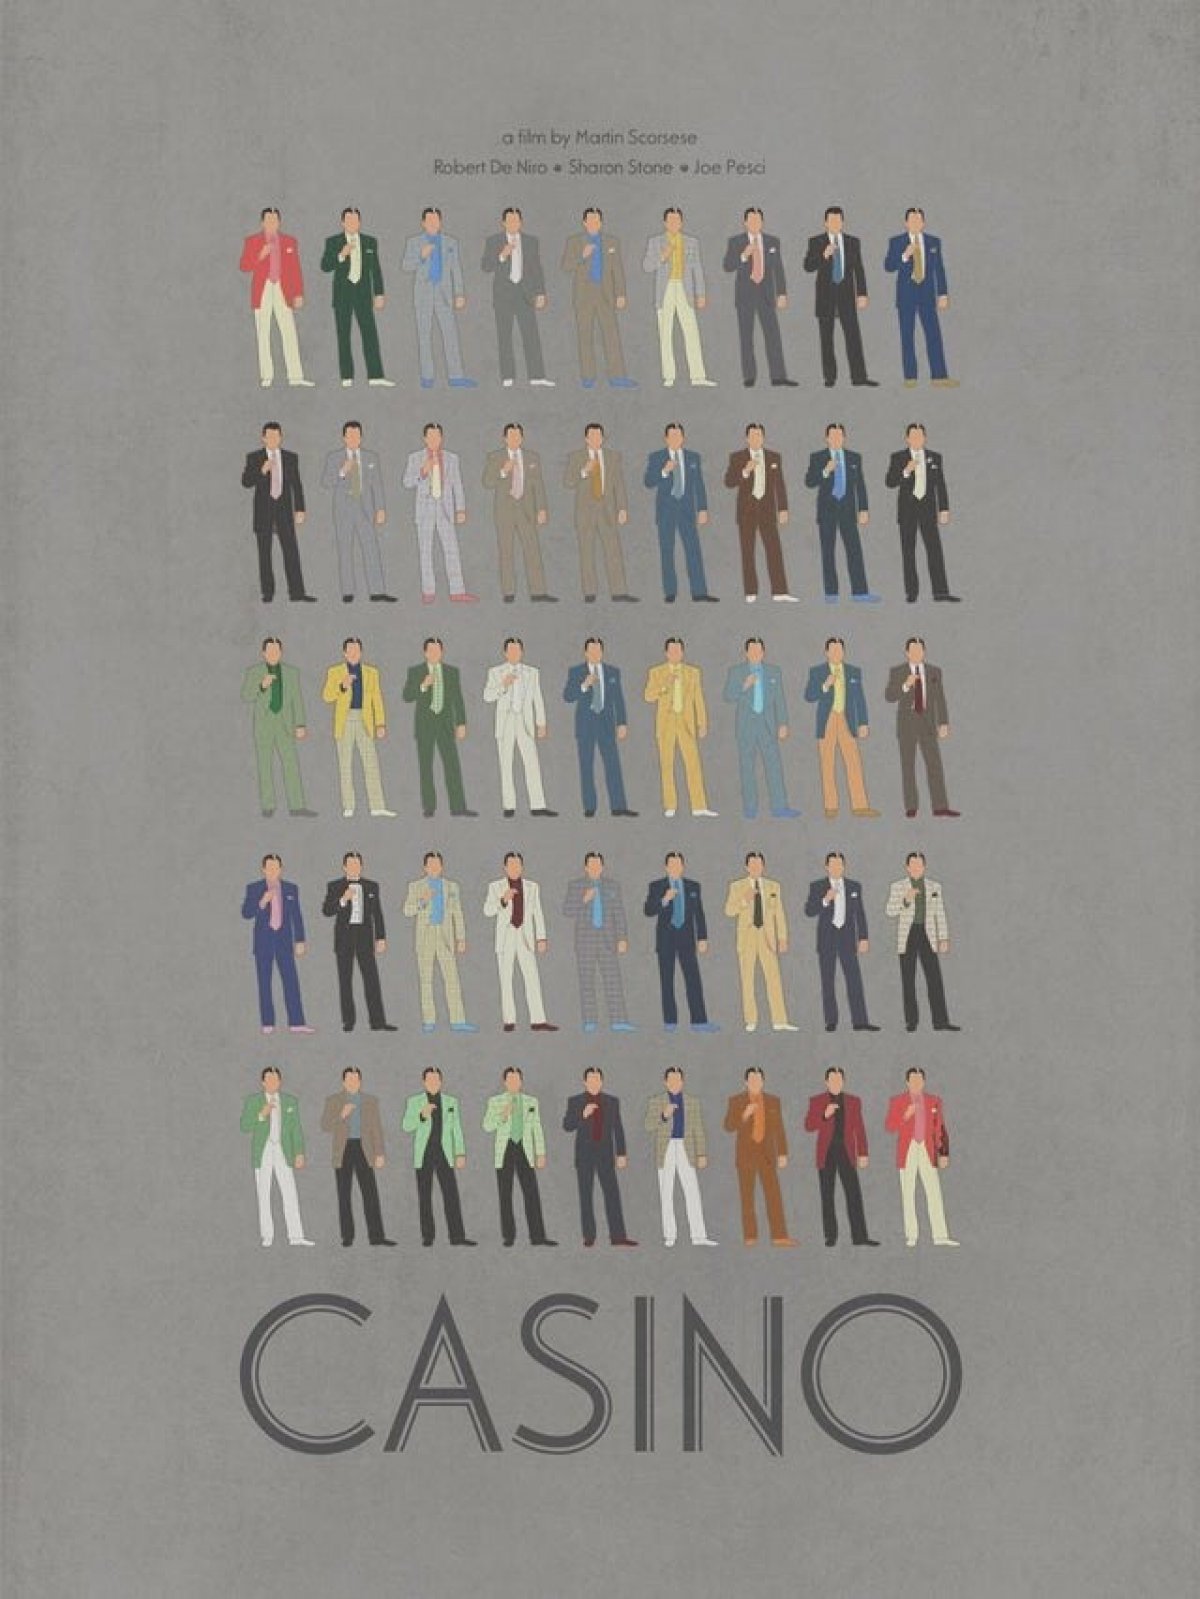 В «Казино» (1995) Роберт Де Ниро в каждой из своих сцен носил разные костюмы, за исключением первой и последней. Плакат показывает все разные костюмы, которые он носил на протяжении всего фильма